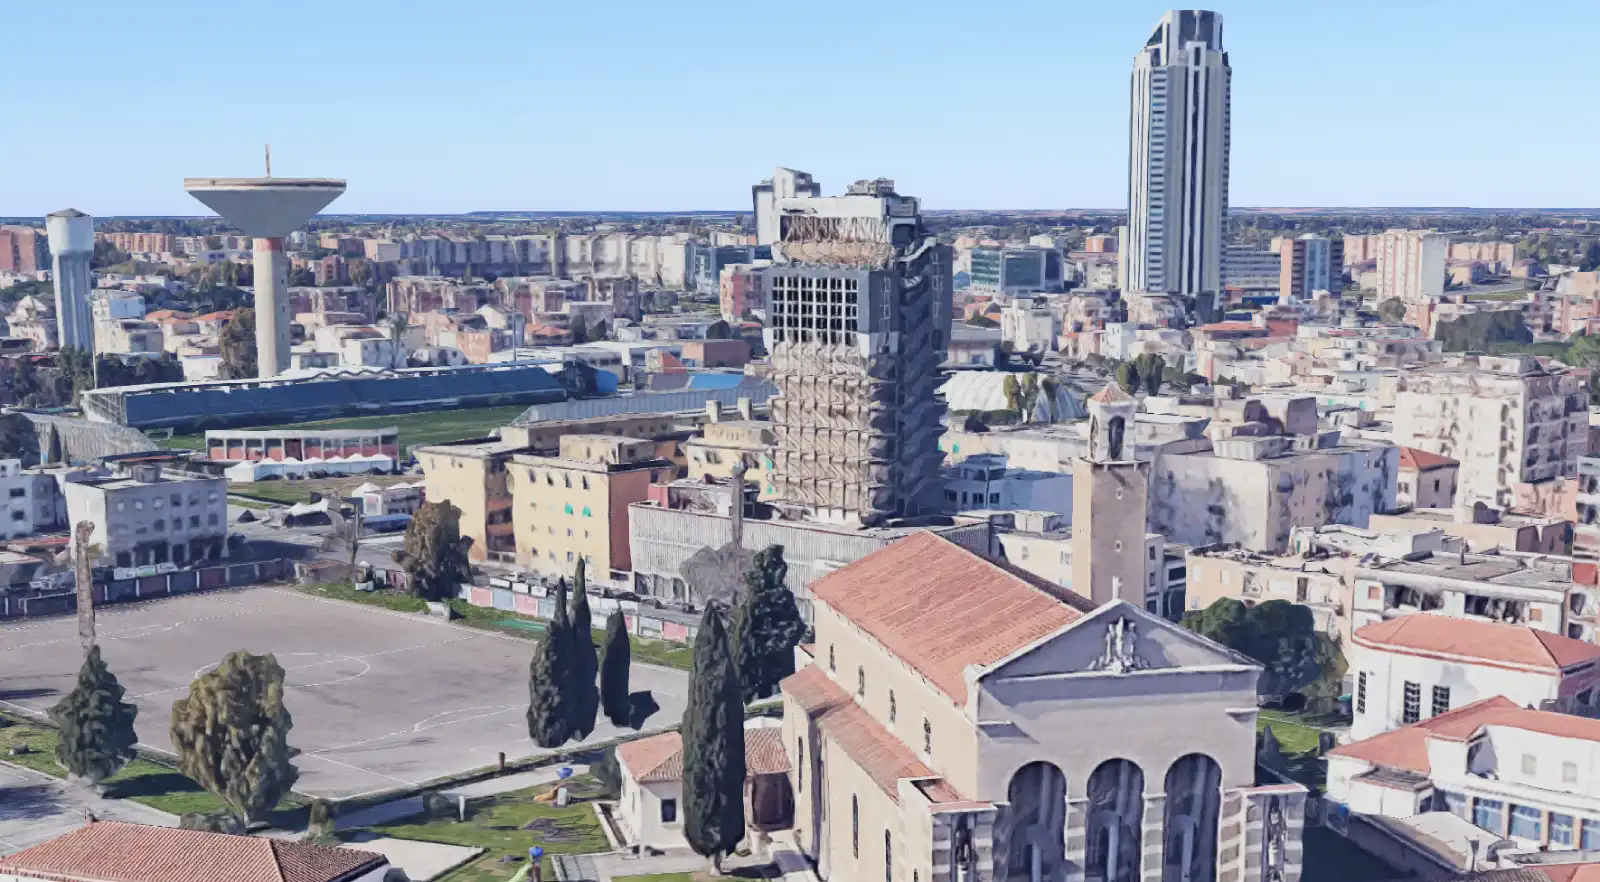 Visione panoramica di Latina con il Palazzo Key al centro (ricostruzione con AI di Google Map)